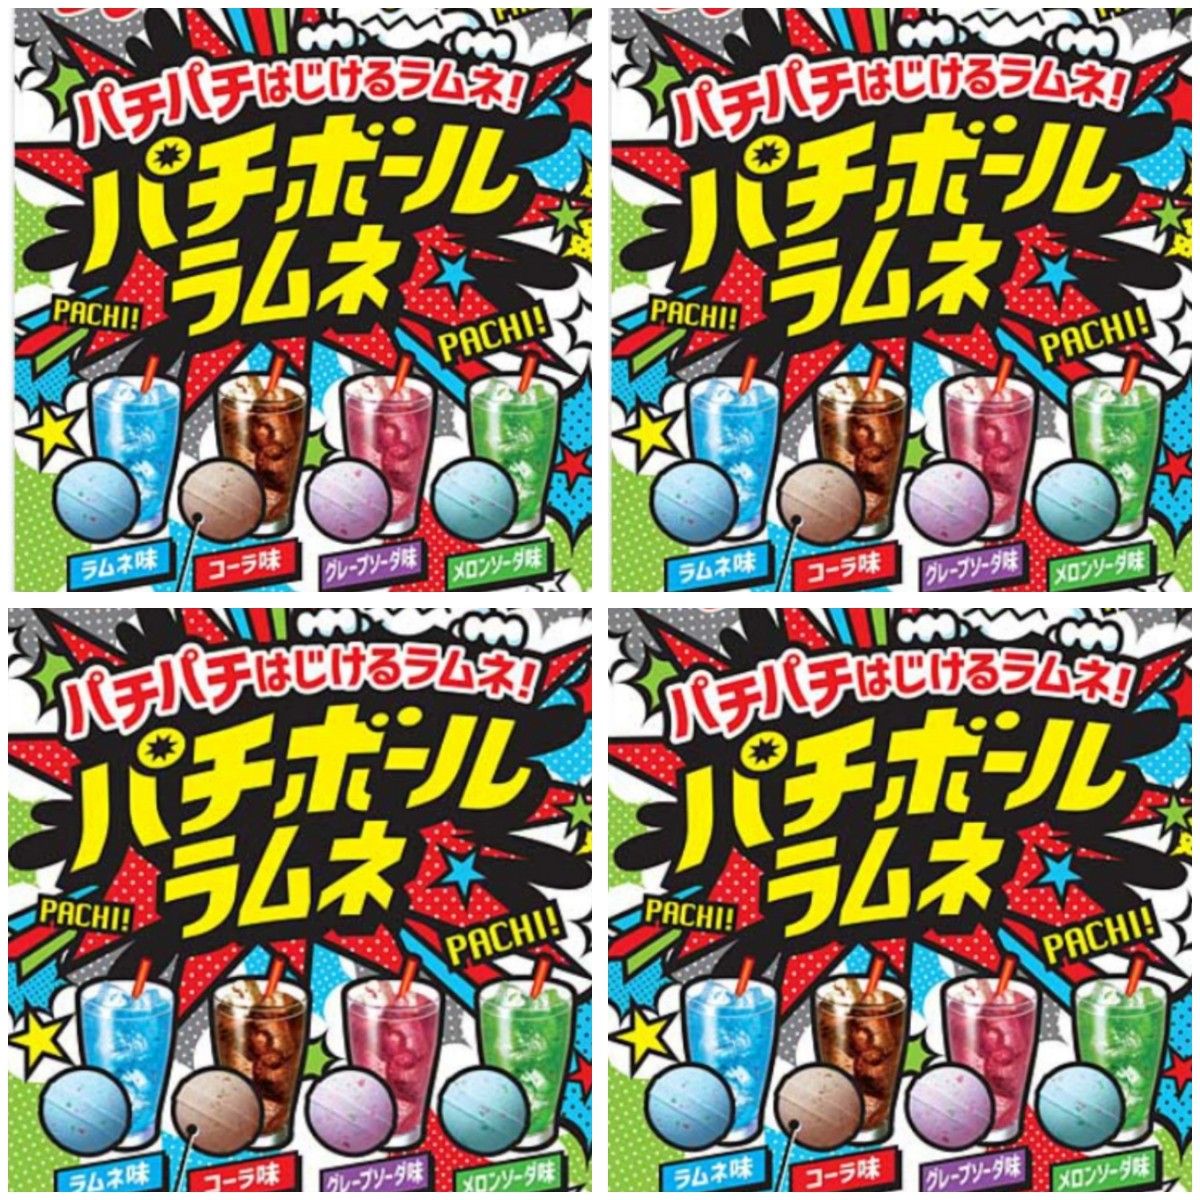 【４袋セット】 ノーベル パチボールラムネ パチパチはじける キャンディ 4種類の味 ラムネ コーラ グレープソーダ メロンソーダ